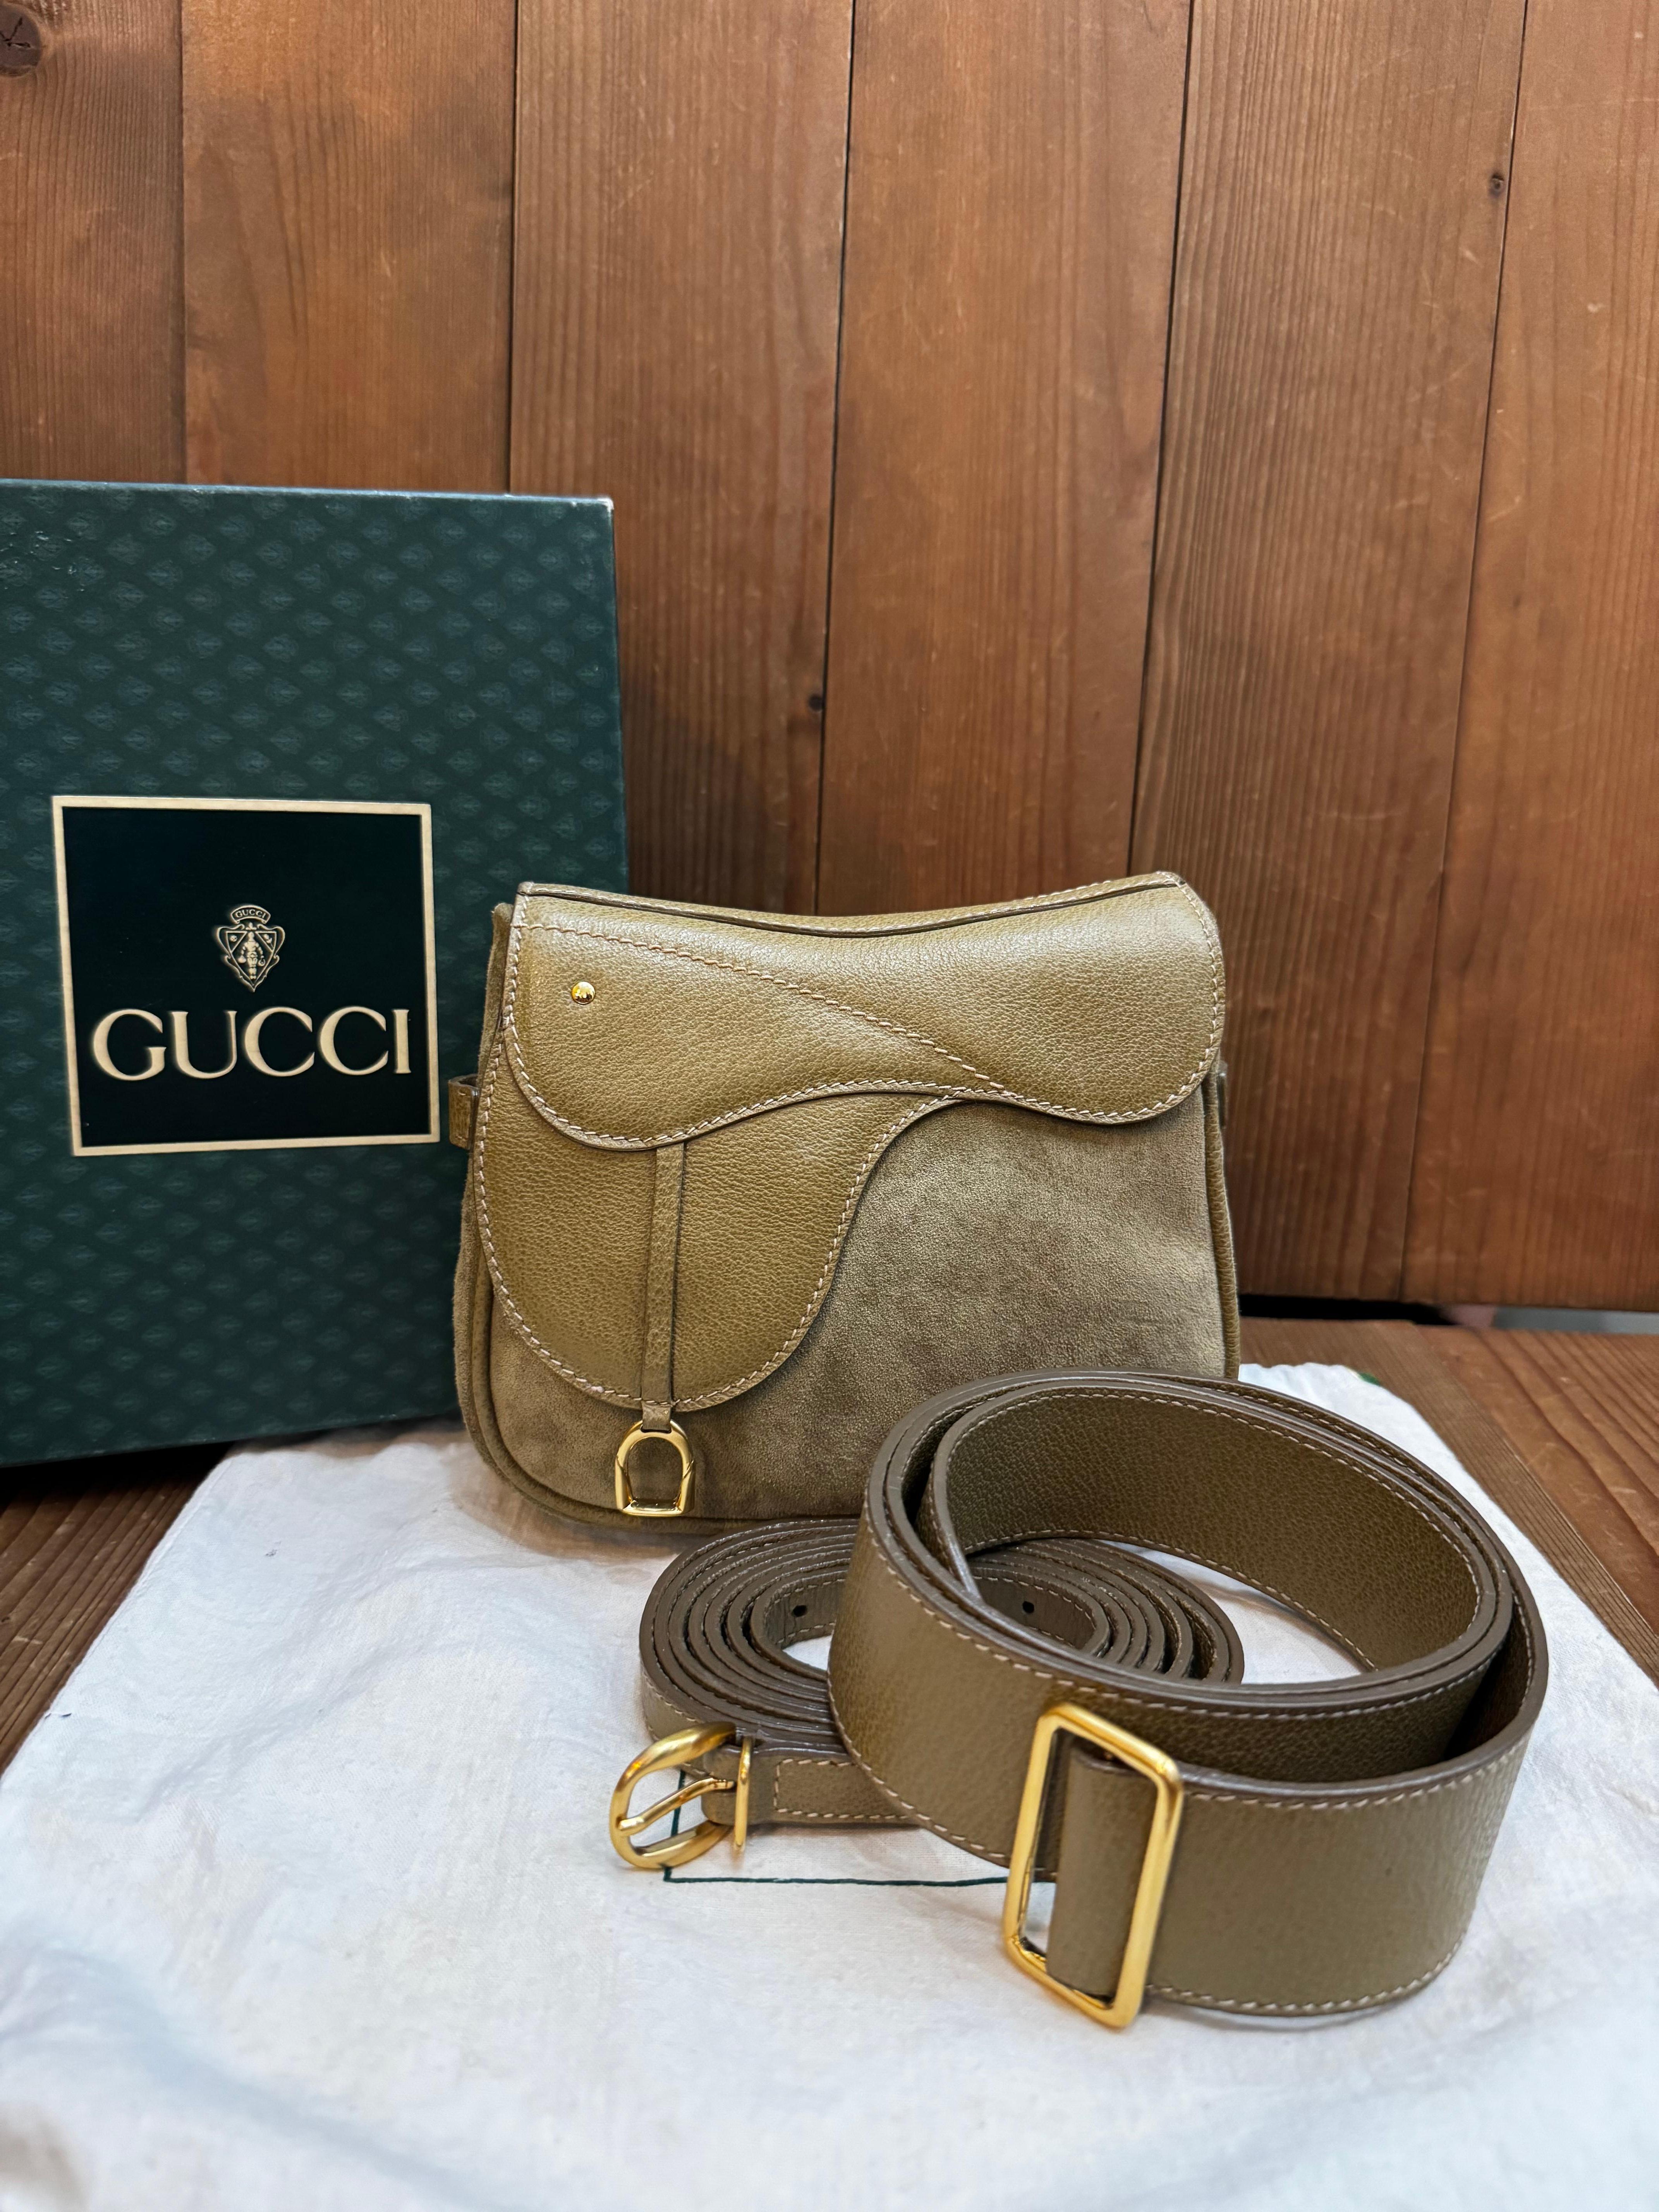 Diese Vintage-Mini-Satteltasche von GUCCI ist aus khakifarbenem Schweins- und Nubukleder gefertigt und mit goldfarbenen Beschlägen versehen. Die Tasche verfügt über einen abnehmbaren Crossbody-Riemen und einen Gürtel aus demselben Leder, mit dem sie